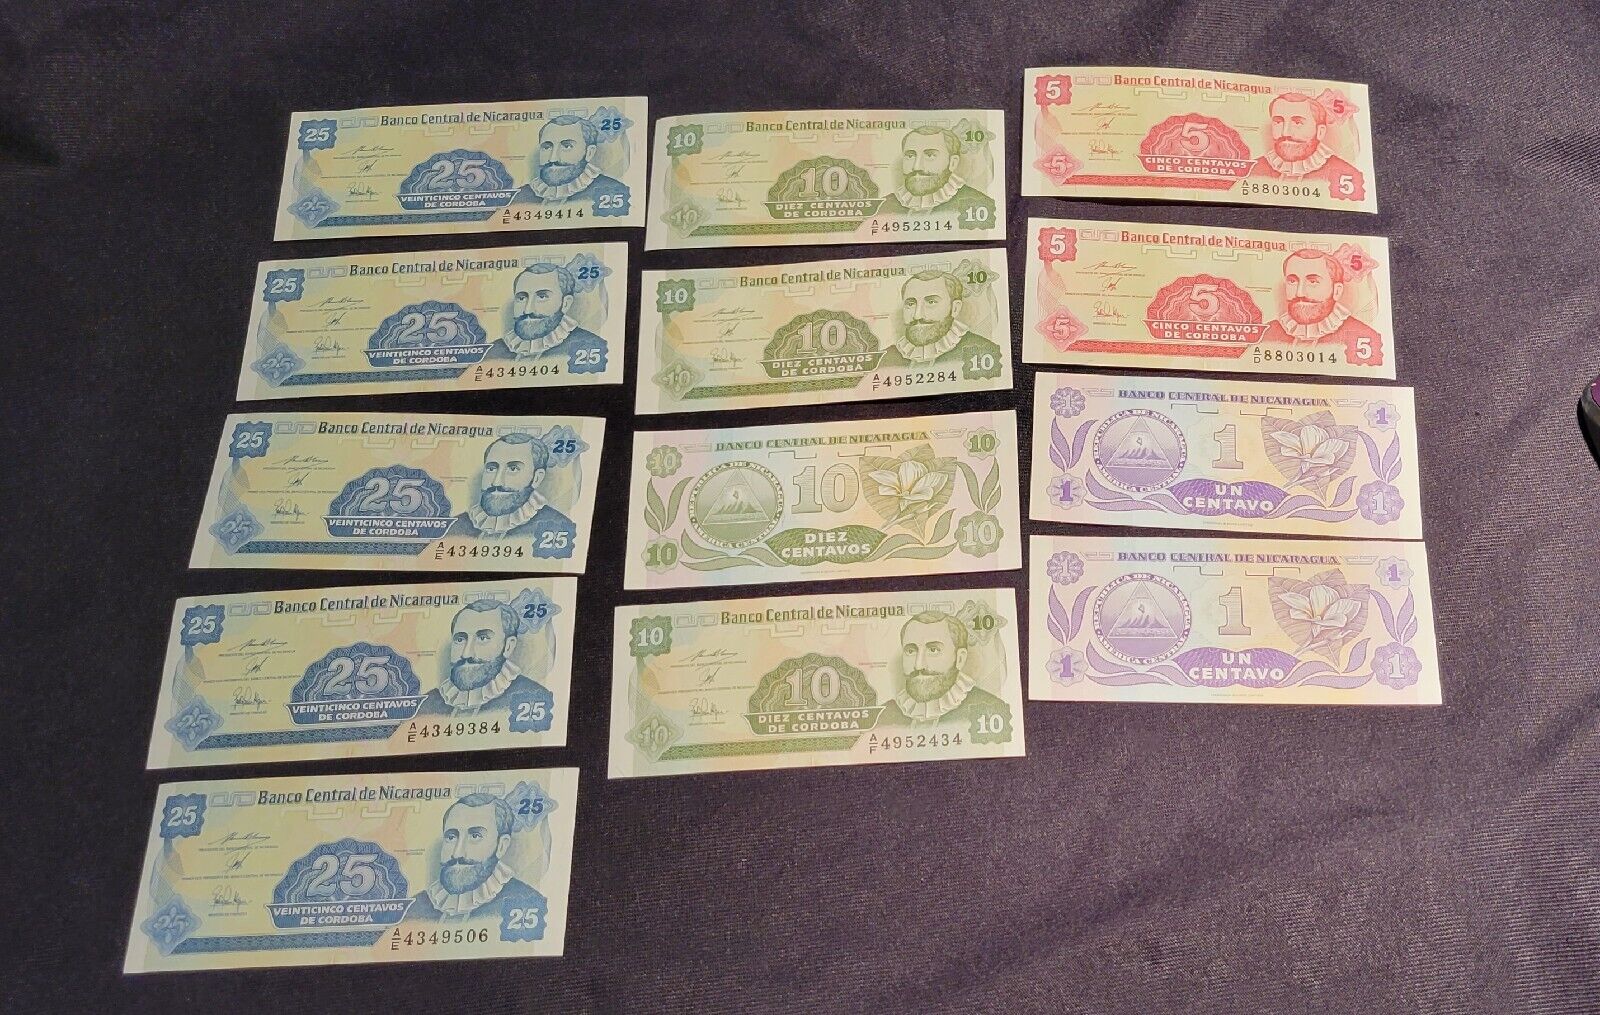 Mint condition Nicaragua paper money